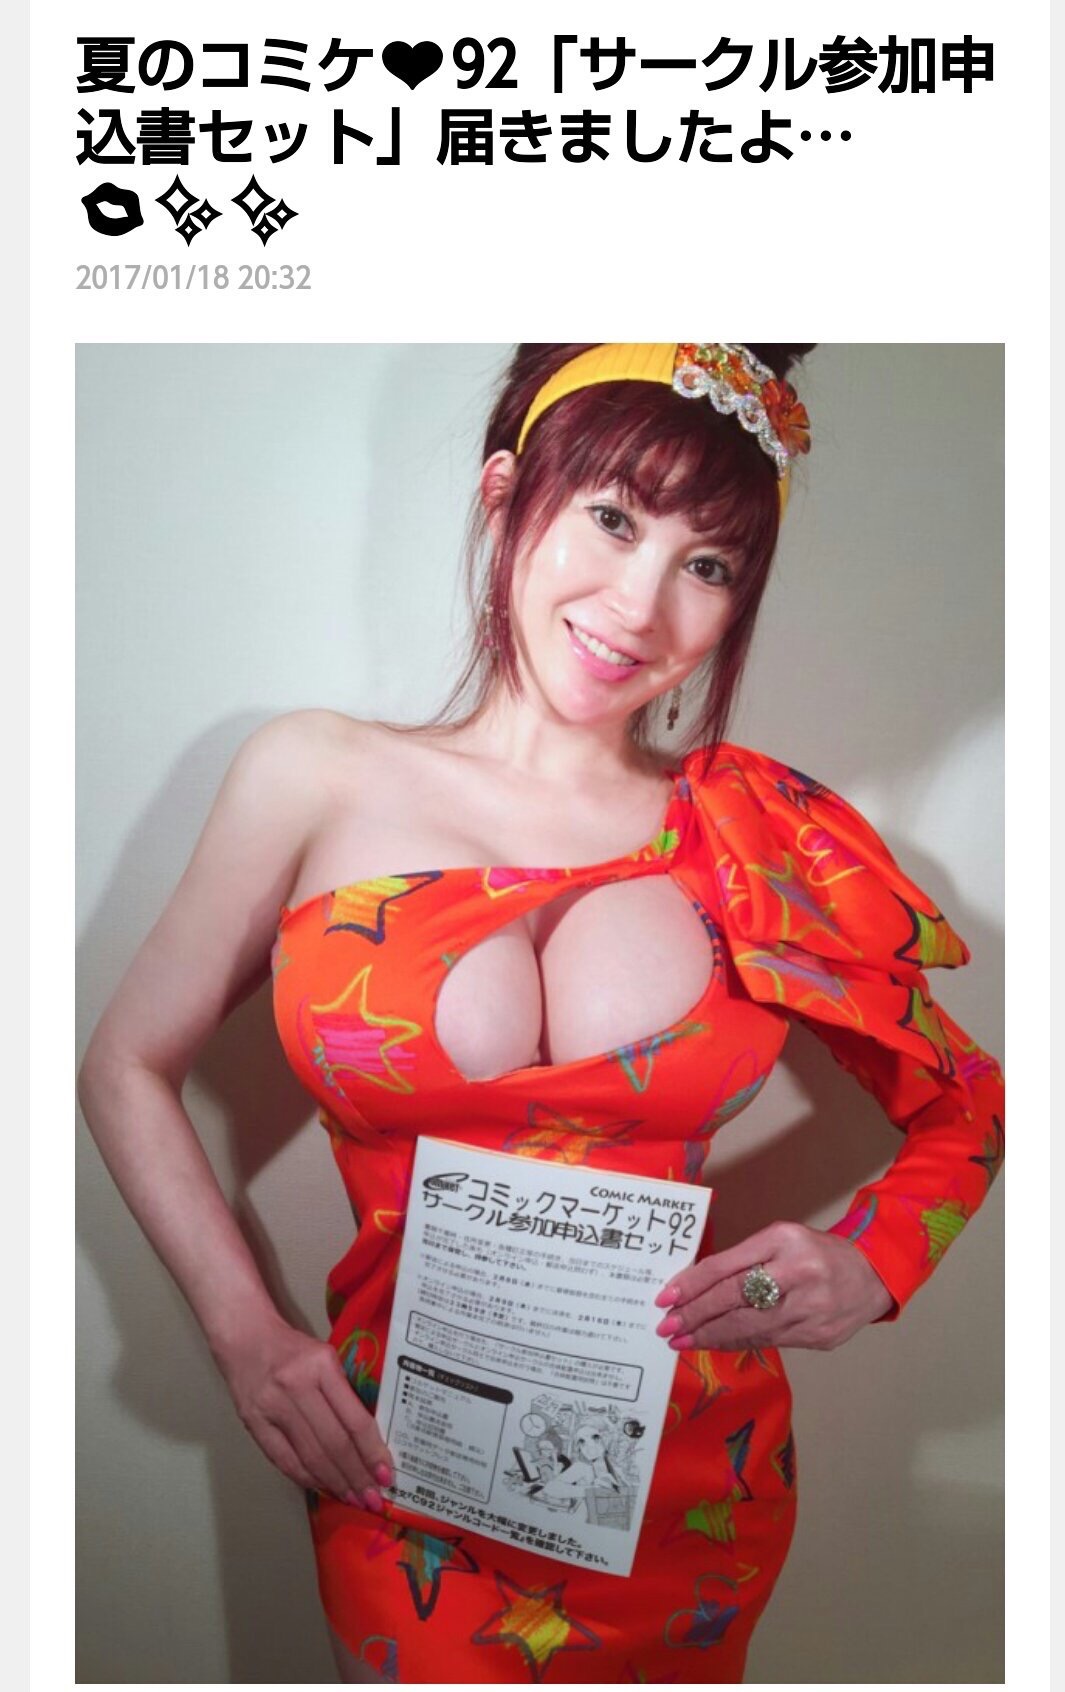 【画像】叶美香さん、とんでもない服装で今年のコミケ参戦への意欲を示す